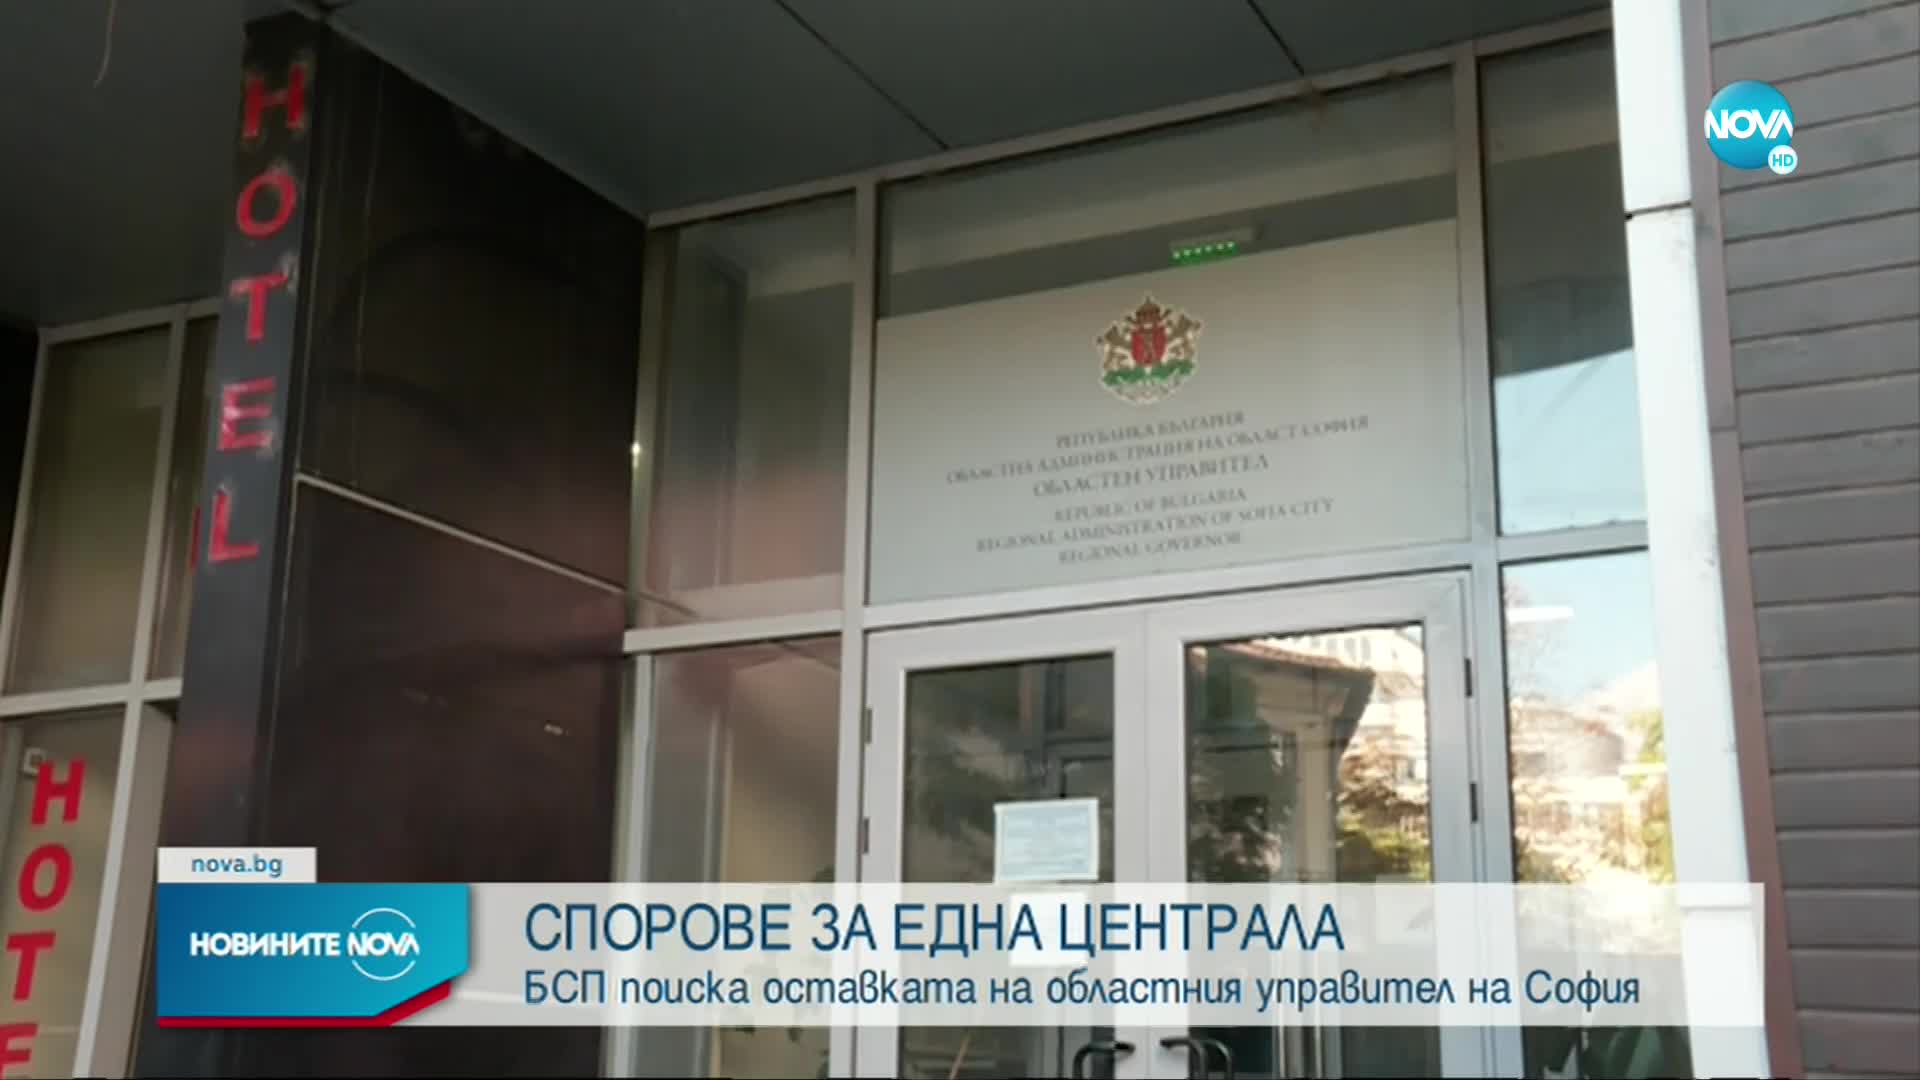 БСП поиска оставката на областния управител на София след спор за наем